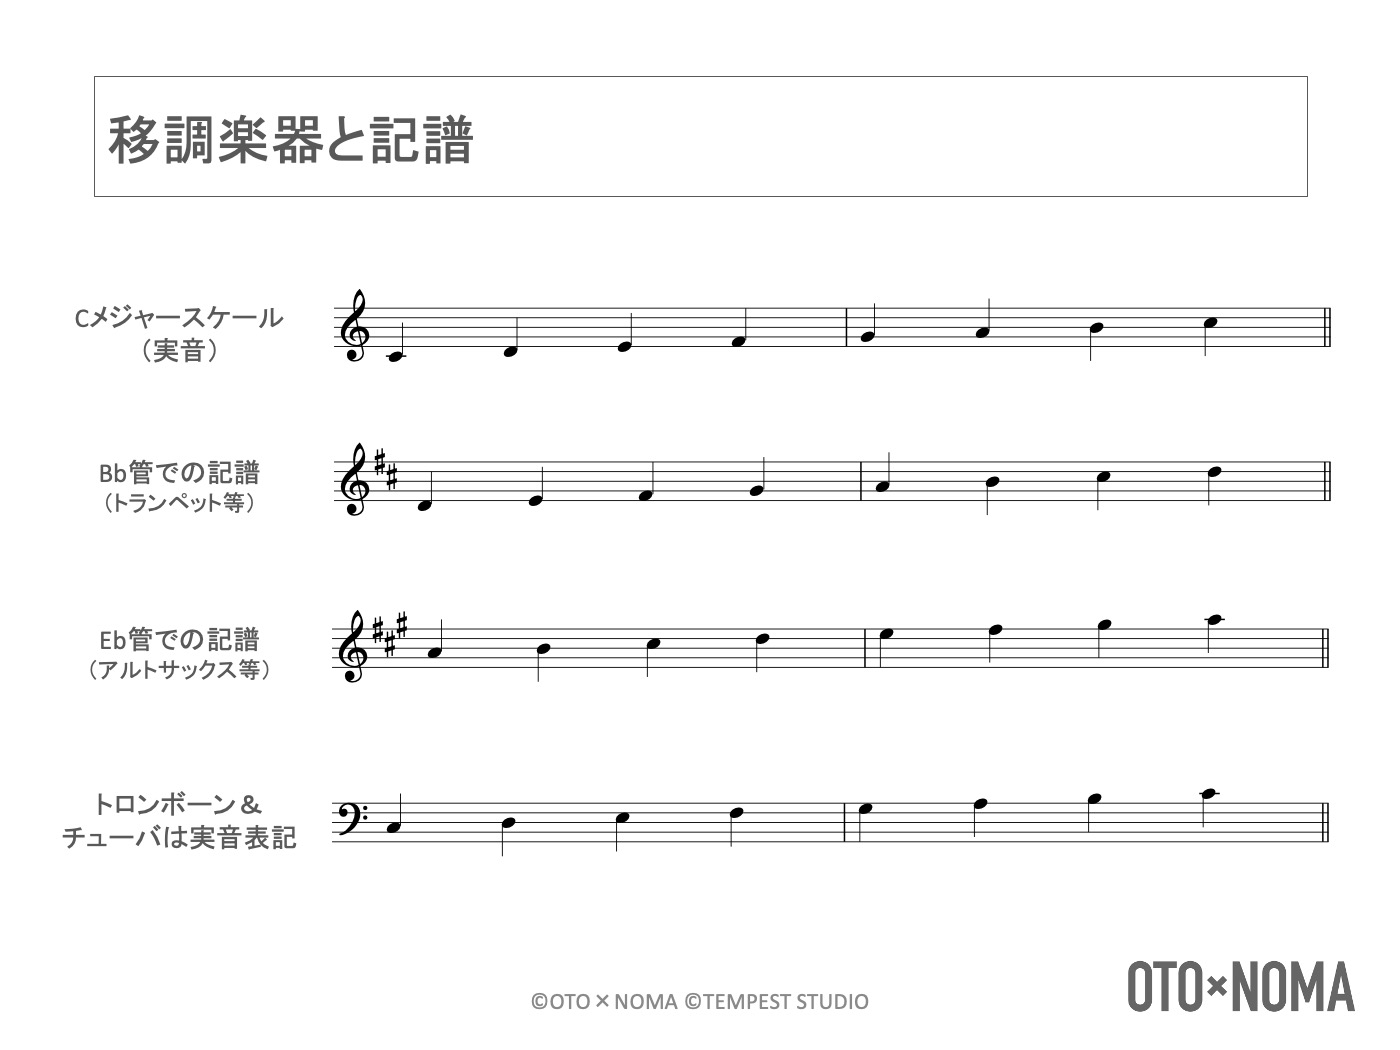 ホーンセクションの楽譜の読み方 書き方 各種奏法の表記 略語まで徹底解説 Oto Noma